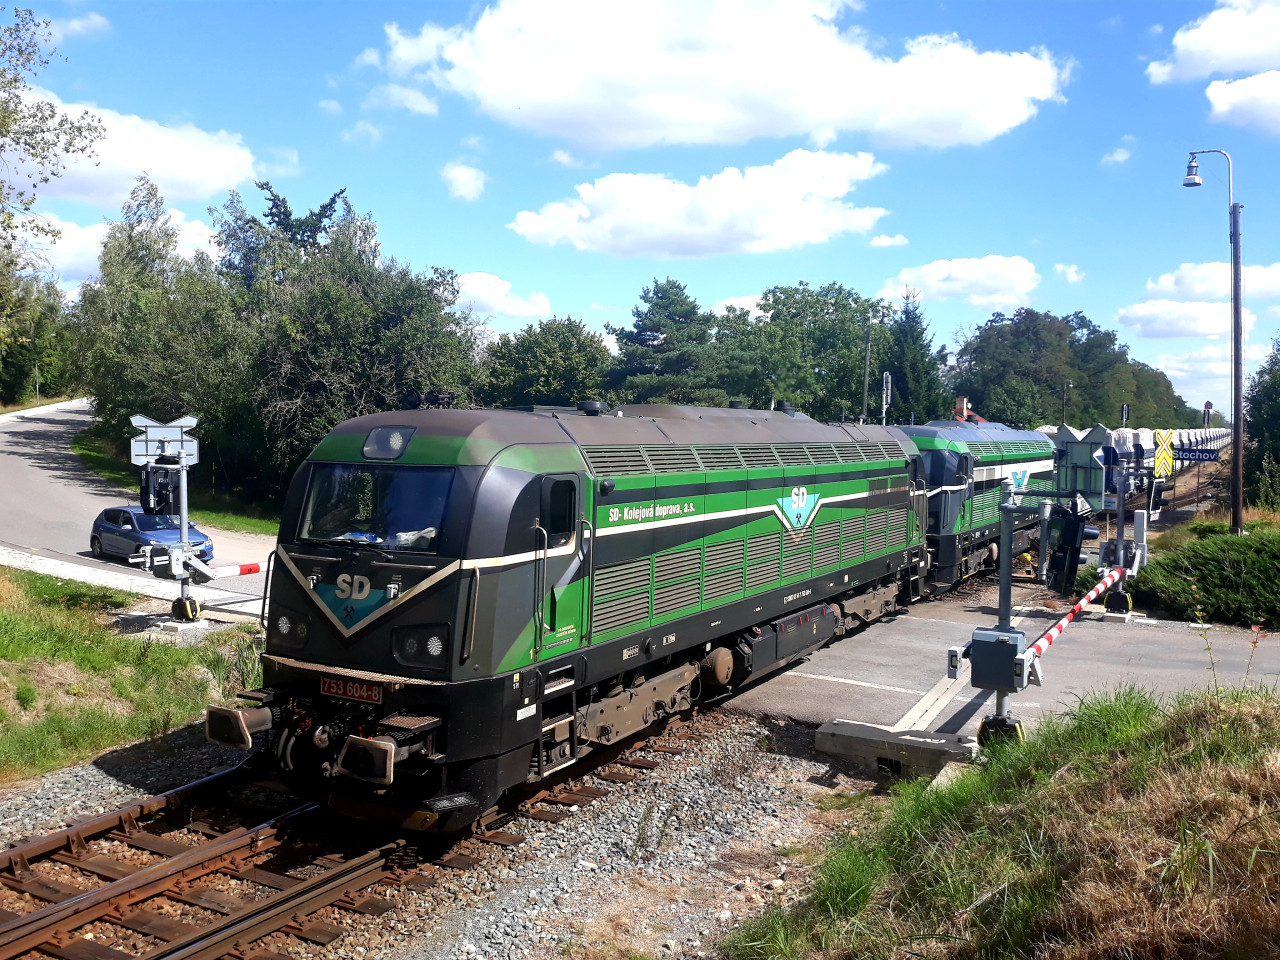 Nkladn vlak SD-KD s trojic lokomotiv ady 753.6 kter veze vpenec na odsen severoeskch elek